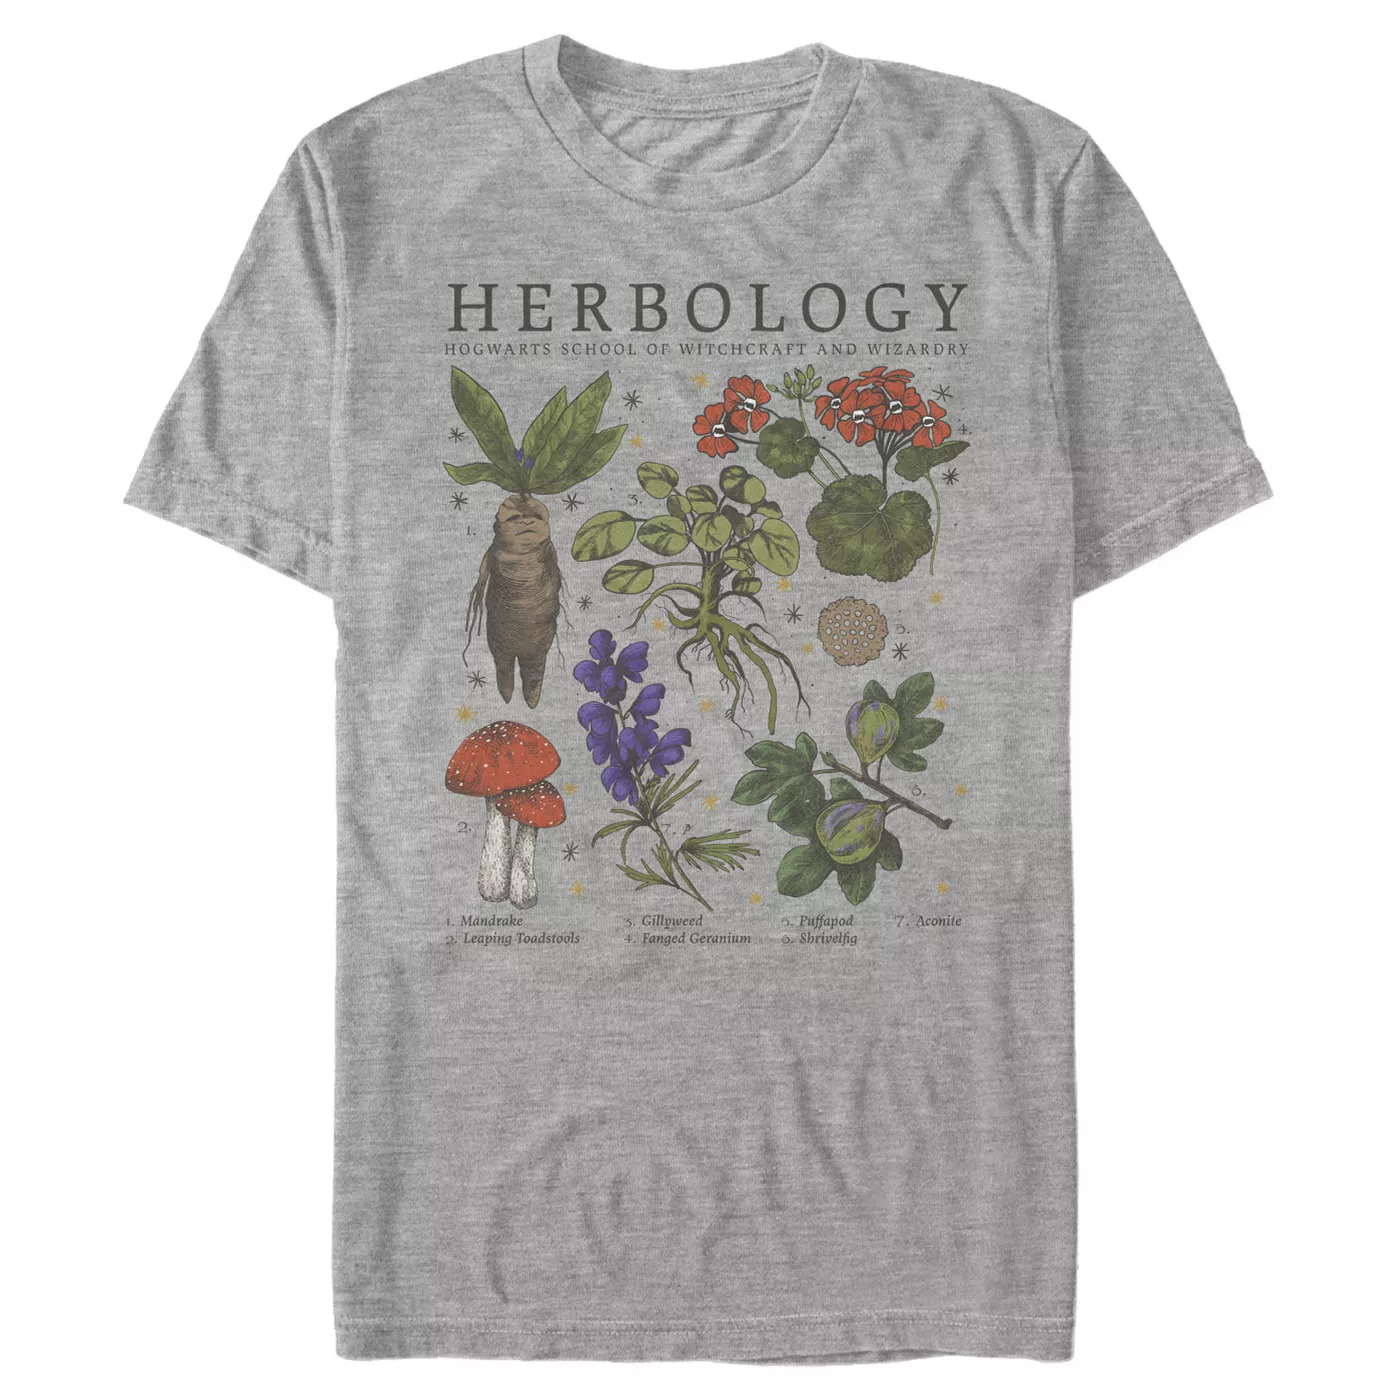 Men's Harry Potter Hogwarts Herbology T-Shirt - image 1 of 3